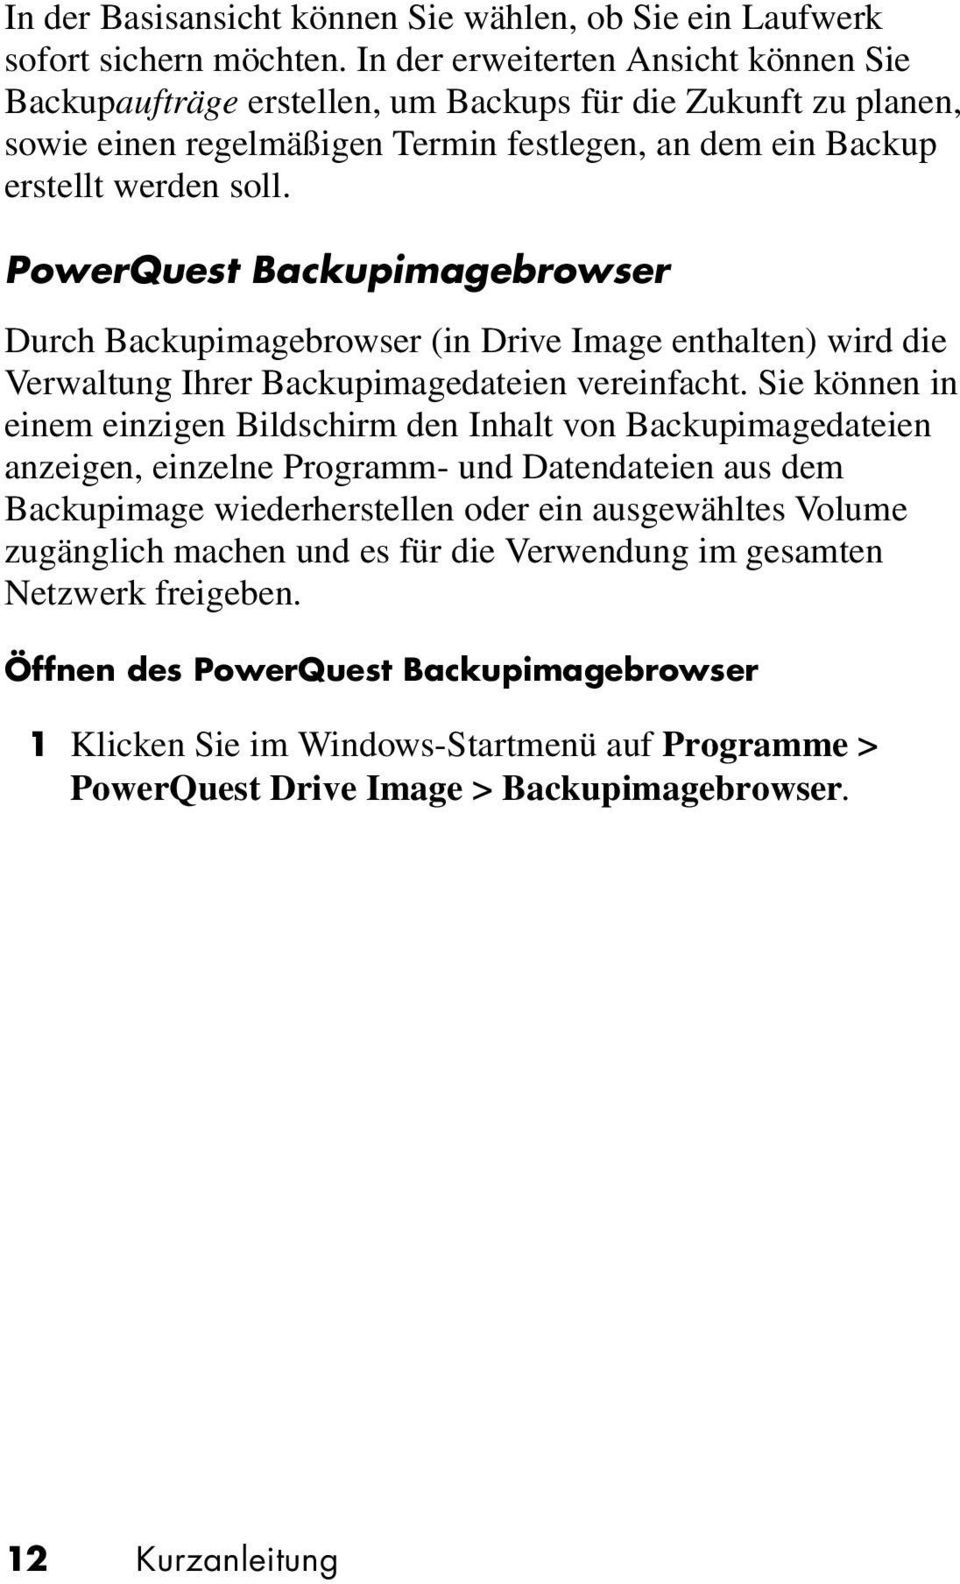 PowerQuest Backupimagebrowser Durch Backupimagebrowser (in Drive Image enthalten) wird die Verwaltung Ihrer Backupimagedateien vereinfacht.